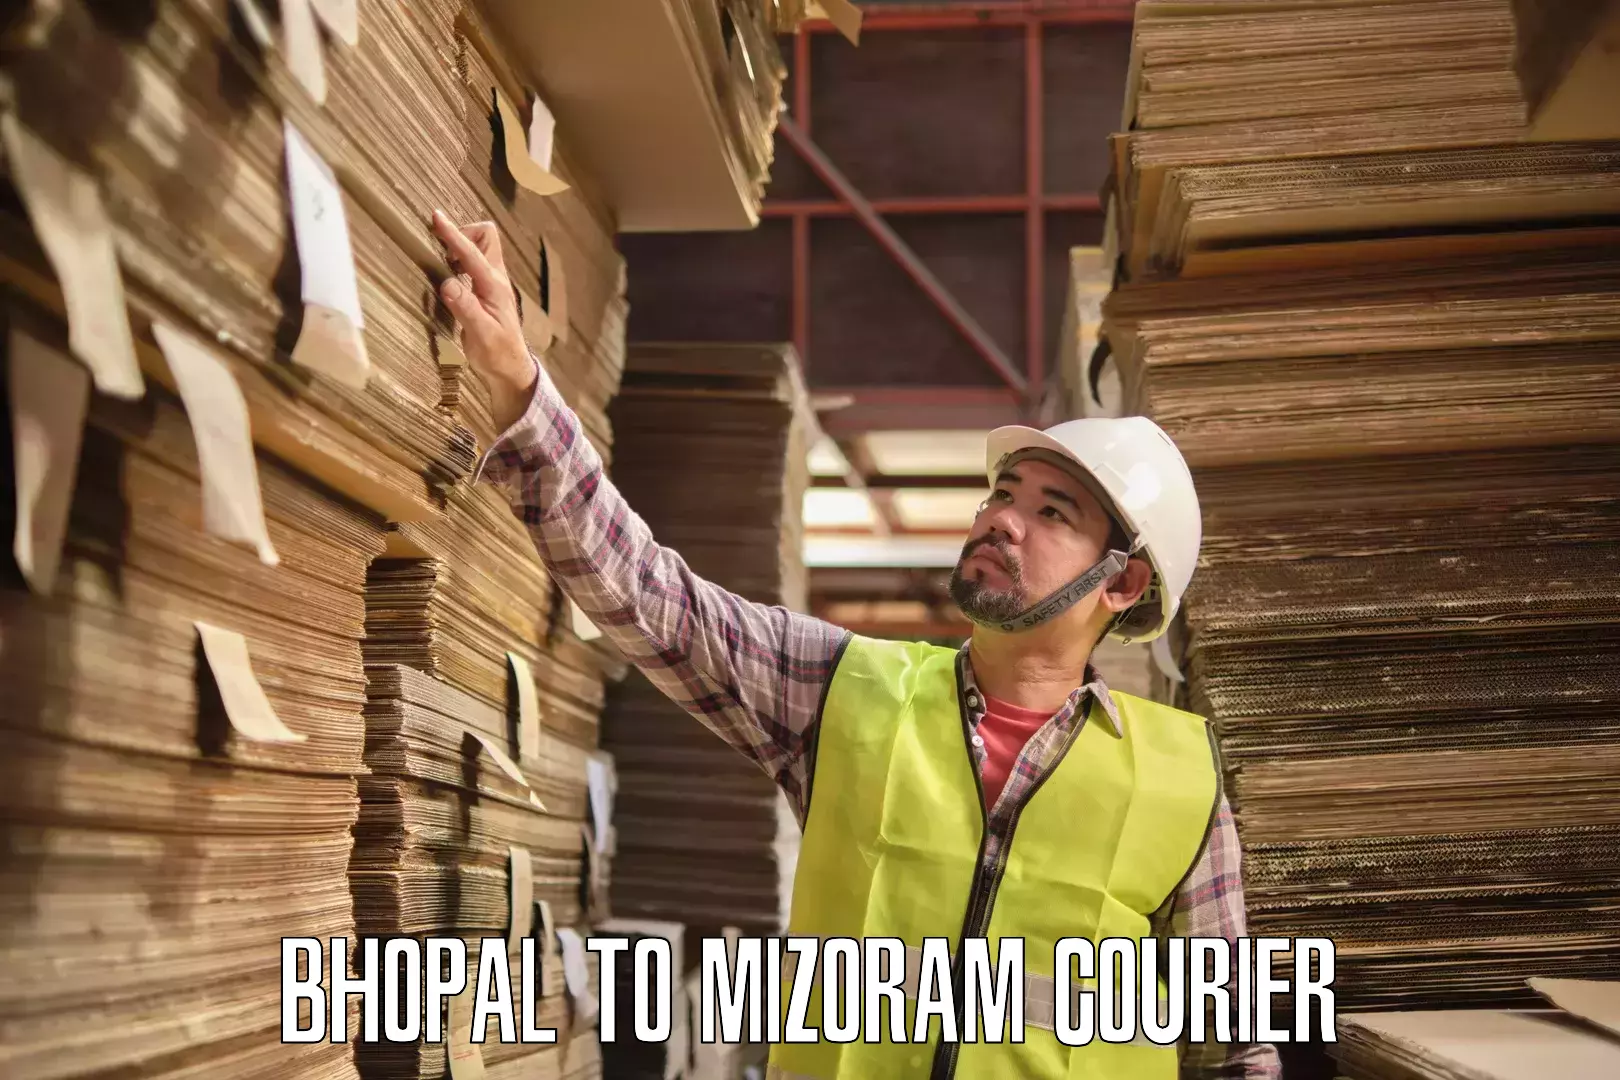 Express logistics providers Bhopal to Khawzawl